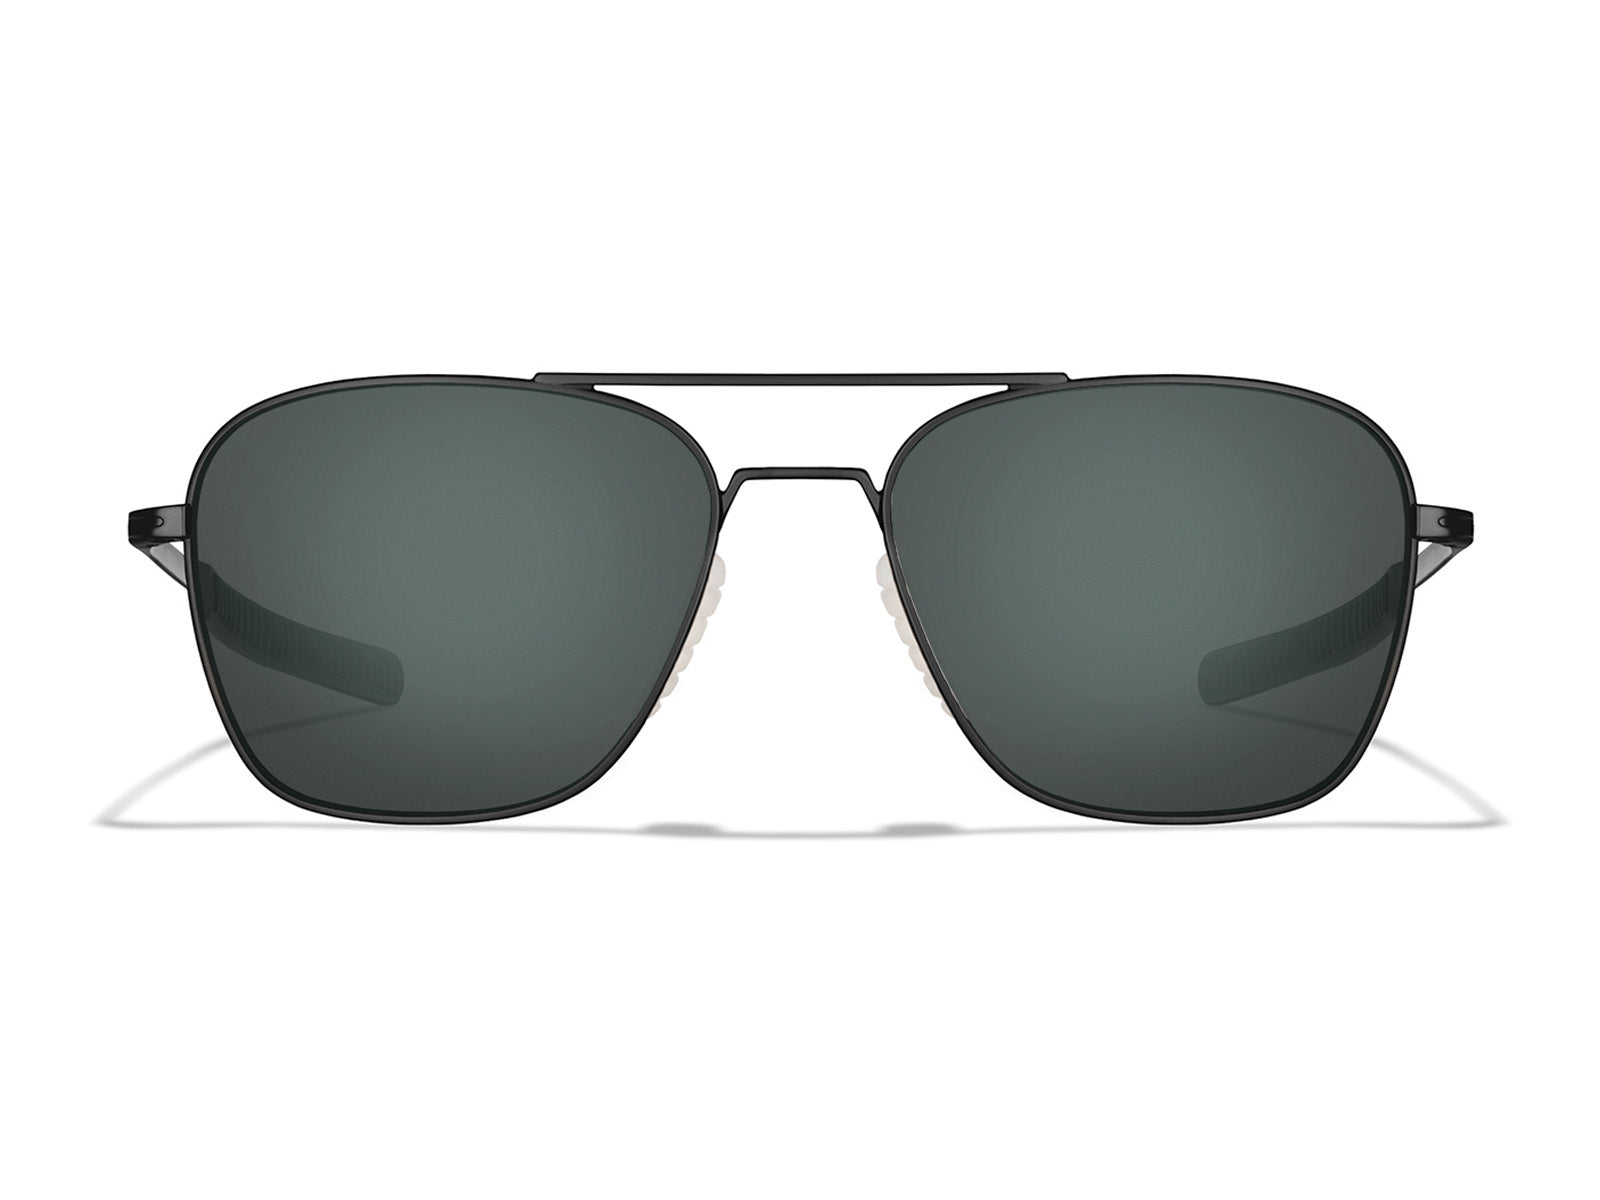 Aviator Glasses - Stylish Frames for Men & Women